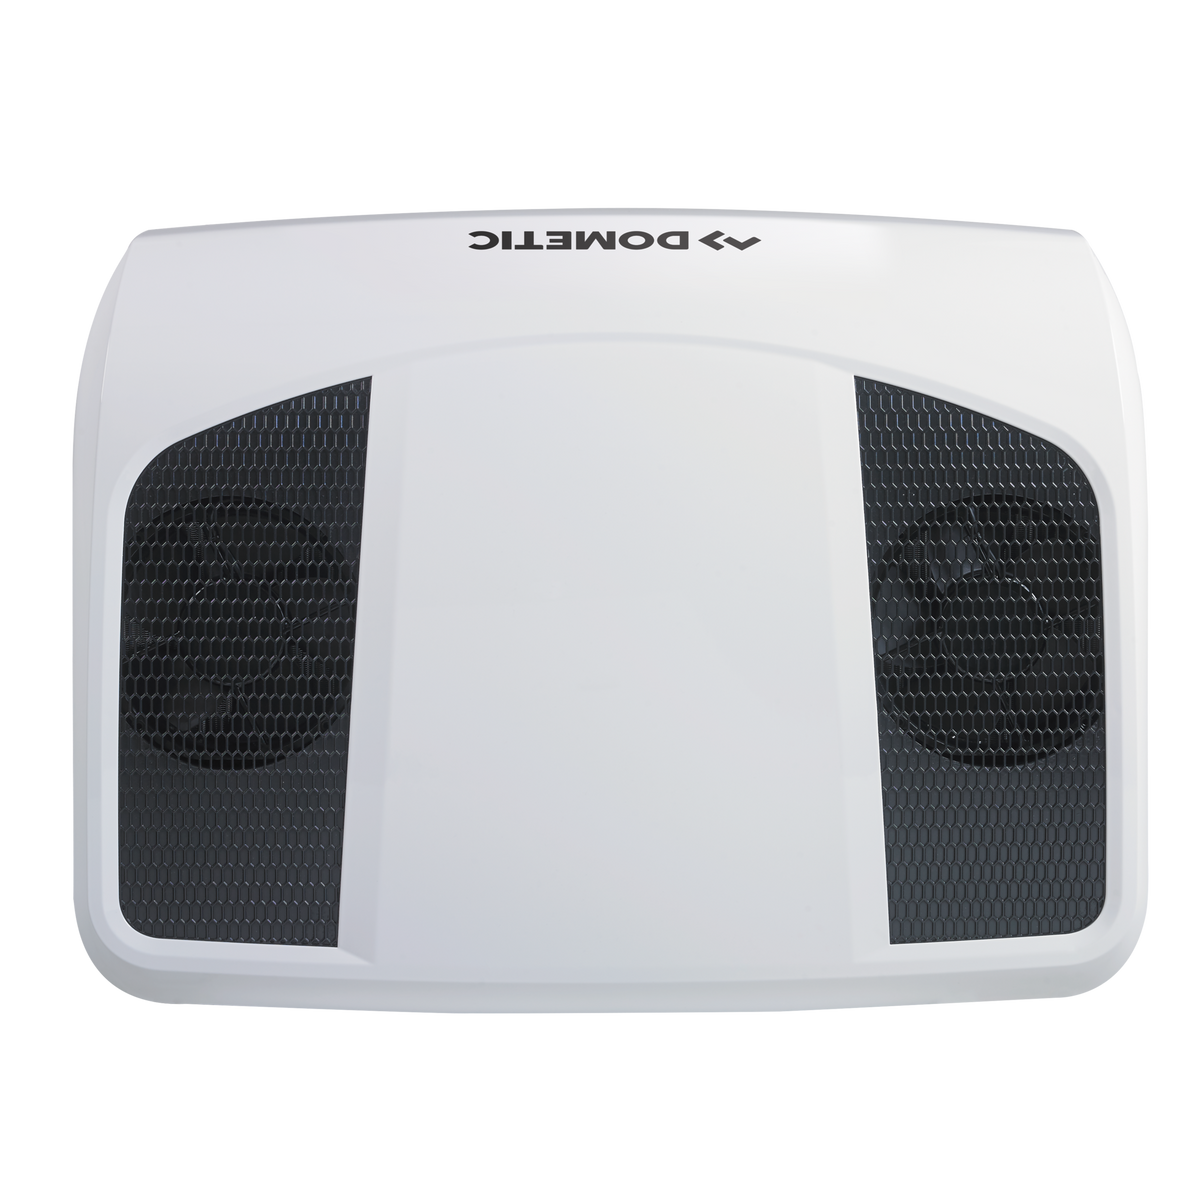 Dometic RTX 2000 Watt 12V Camper Van Air Conditioner (9600028490)